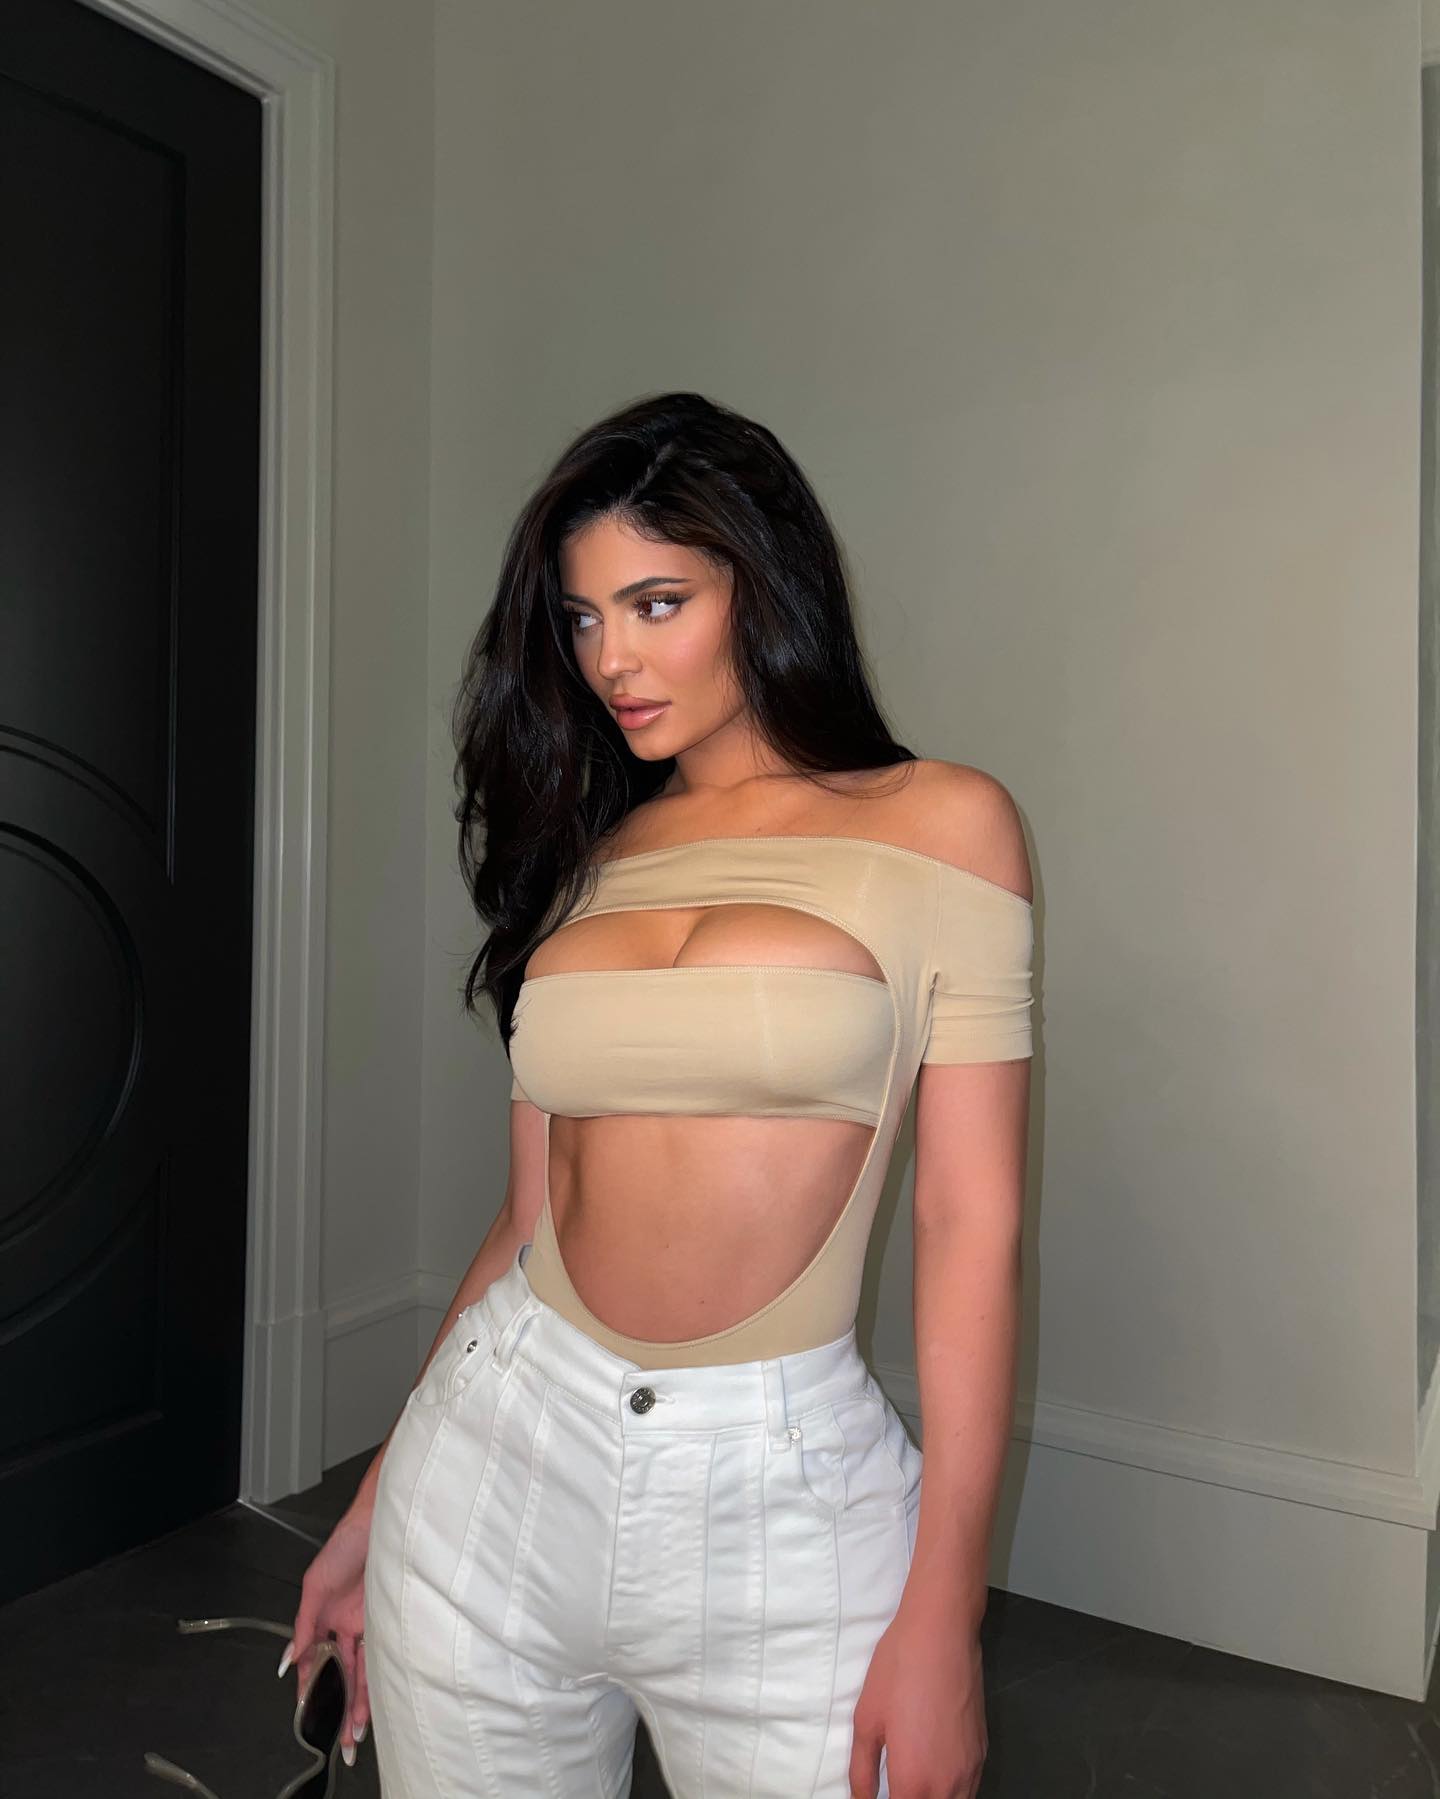 Kylie Jenner Photos